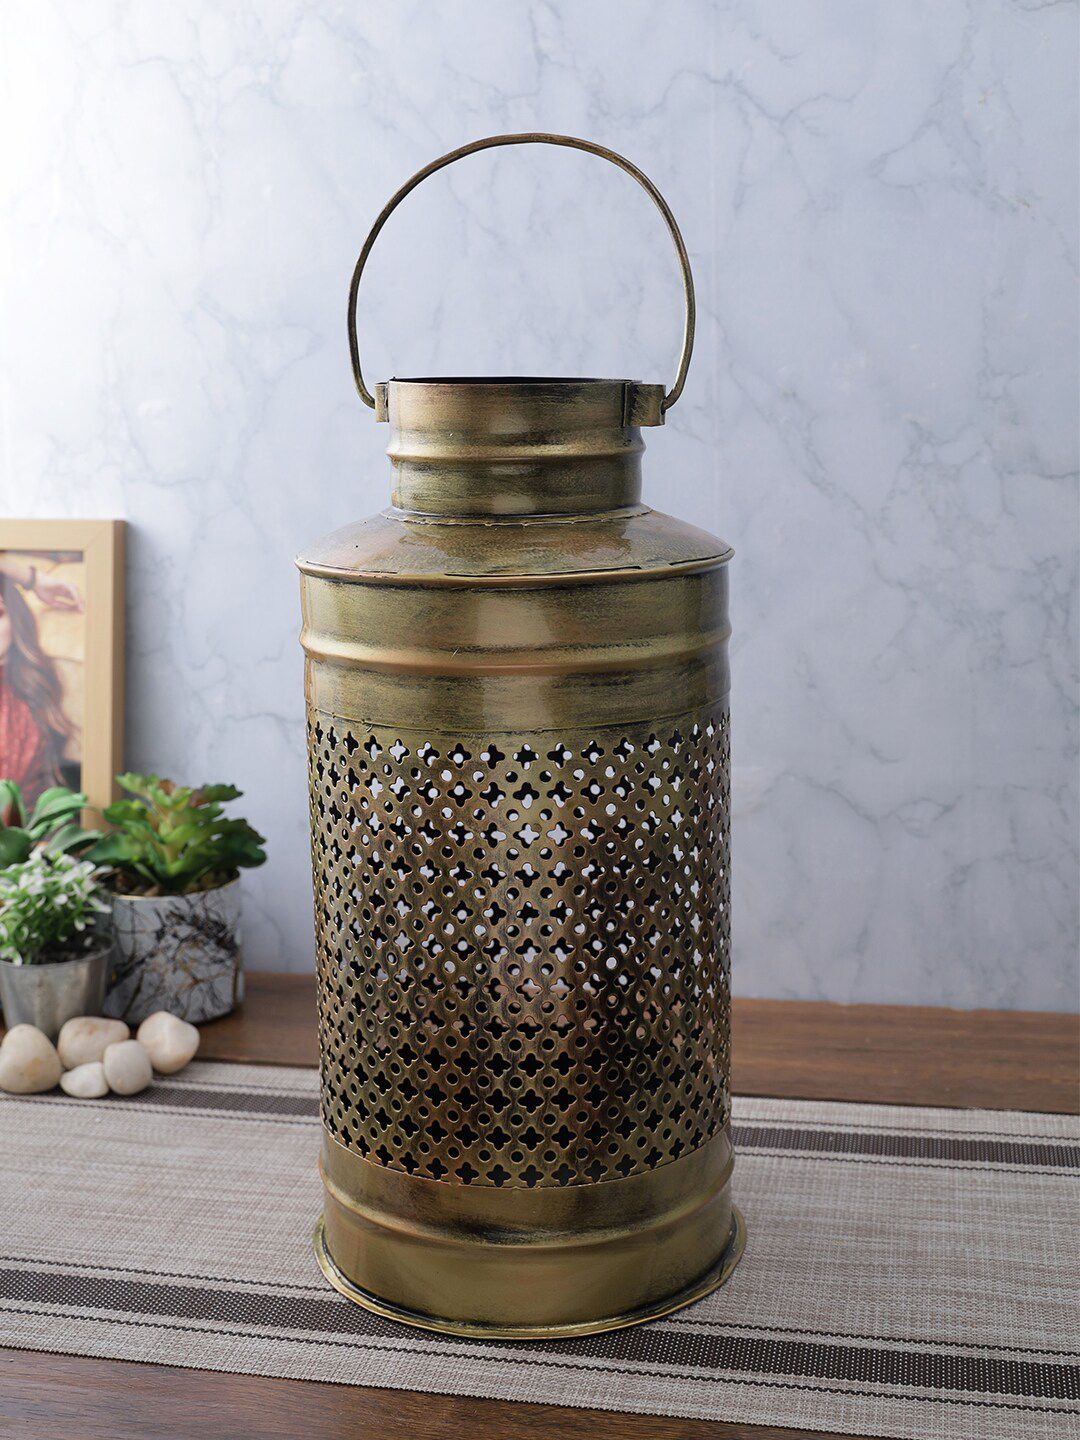 Aapno Rajasthan Gold-Toned Metal Jaal Design Flower Vase Price in India